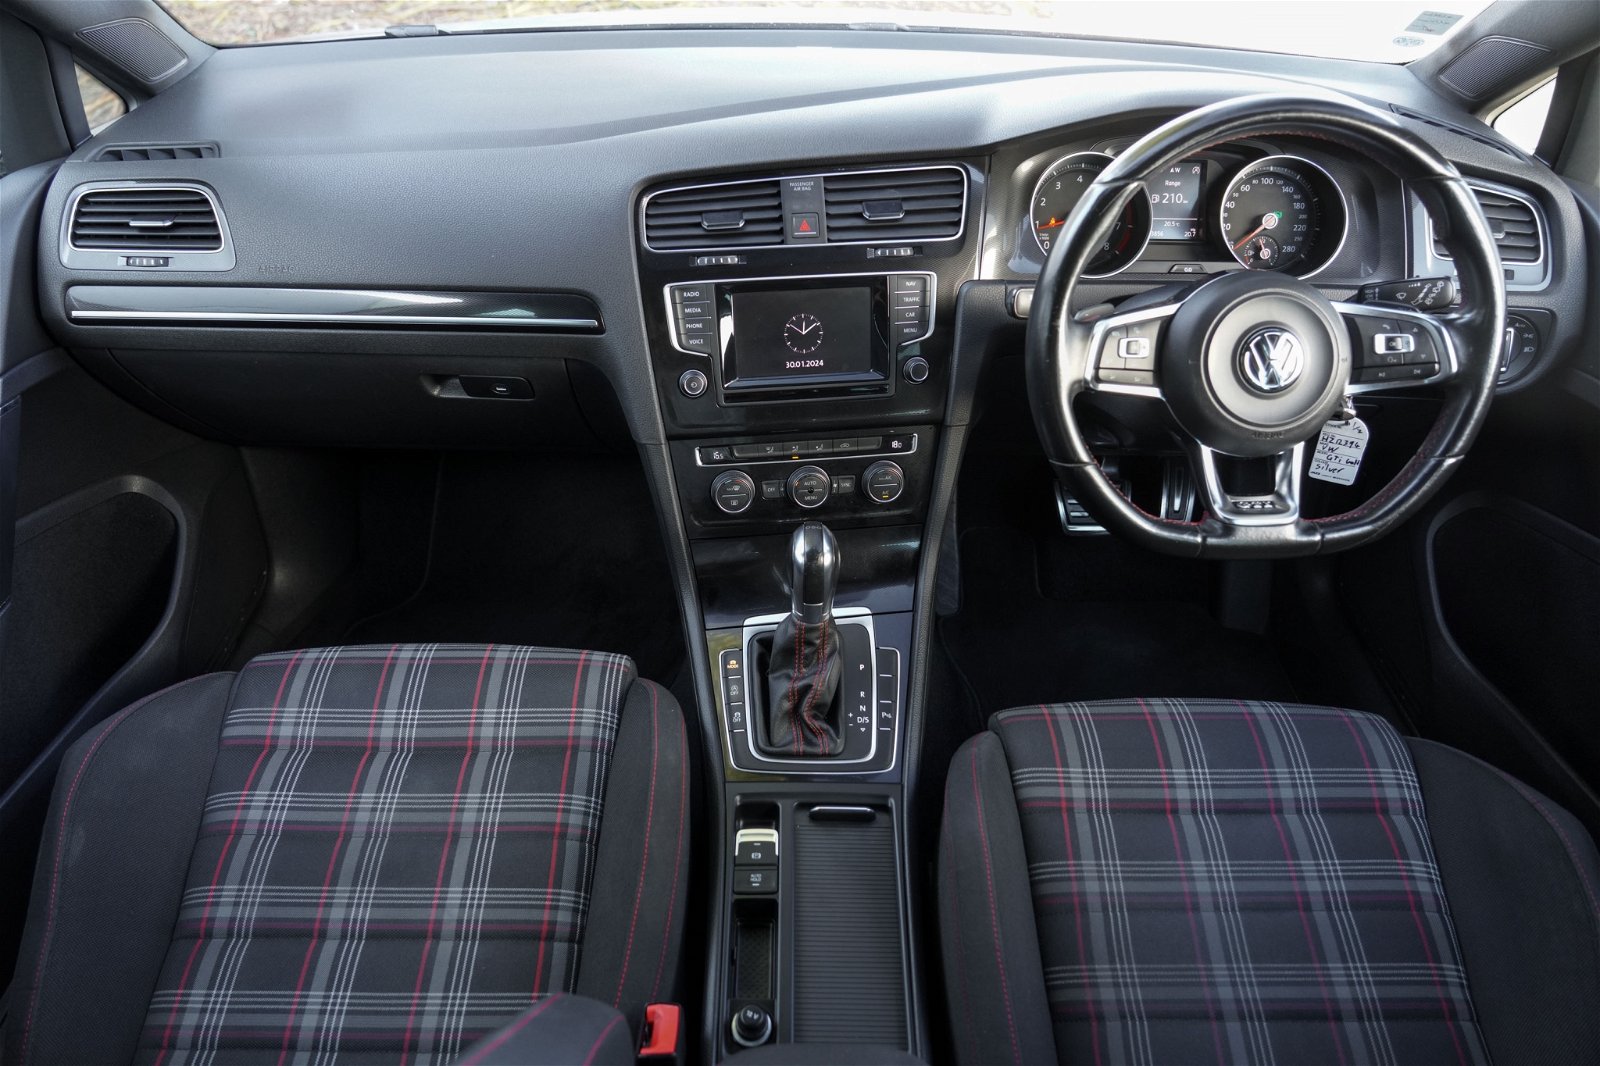 2015 Volkswagen Golf GTI162KW 2.0P 6A5Dr Hatch